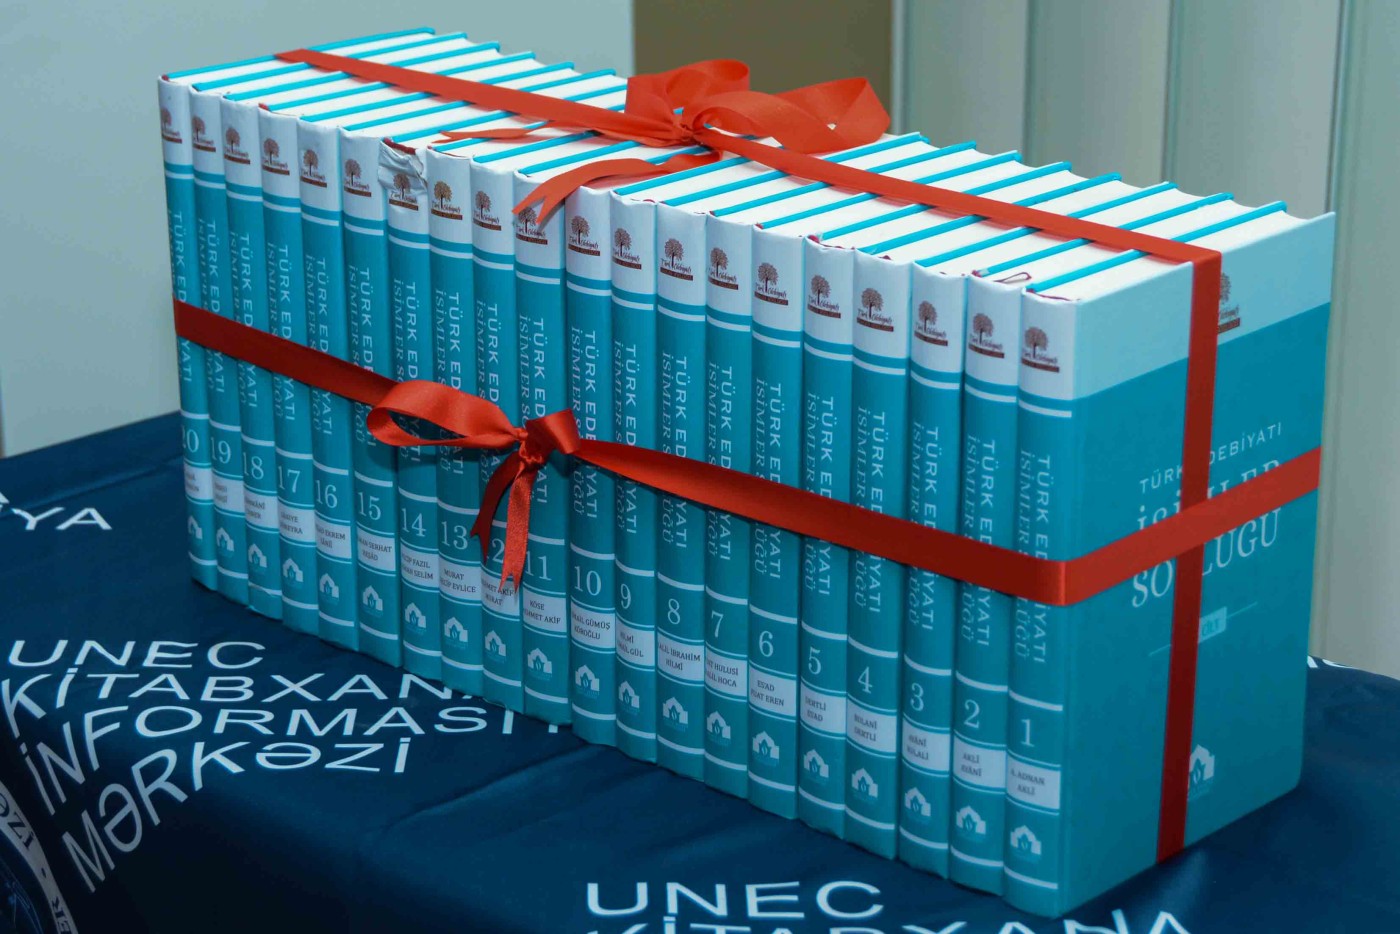 UNEC-də 20 cildlik “Türk edebiyatı isimler sözlüyü”nün təqdimatı olub - FOTOLAR